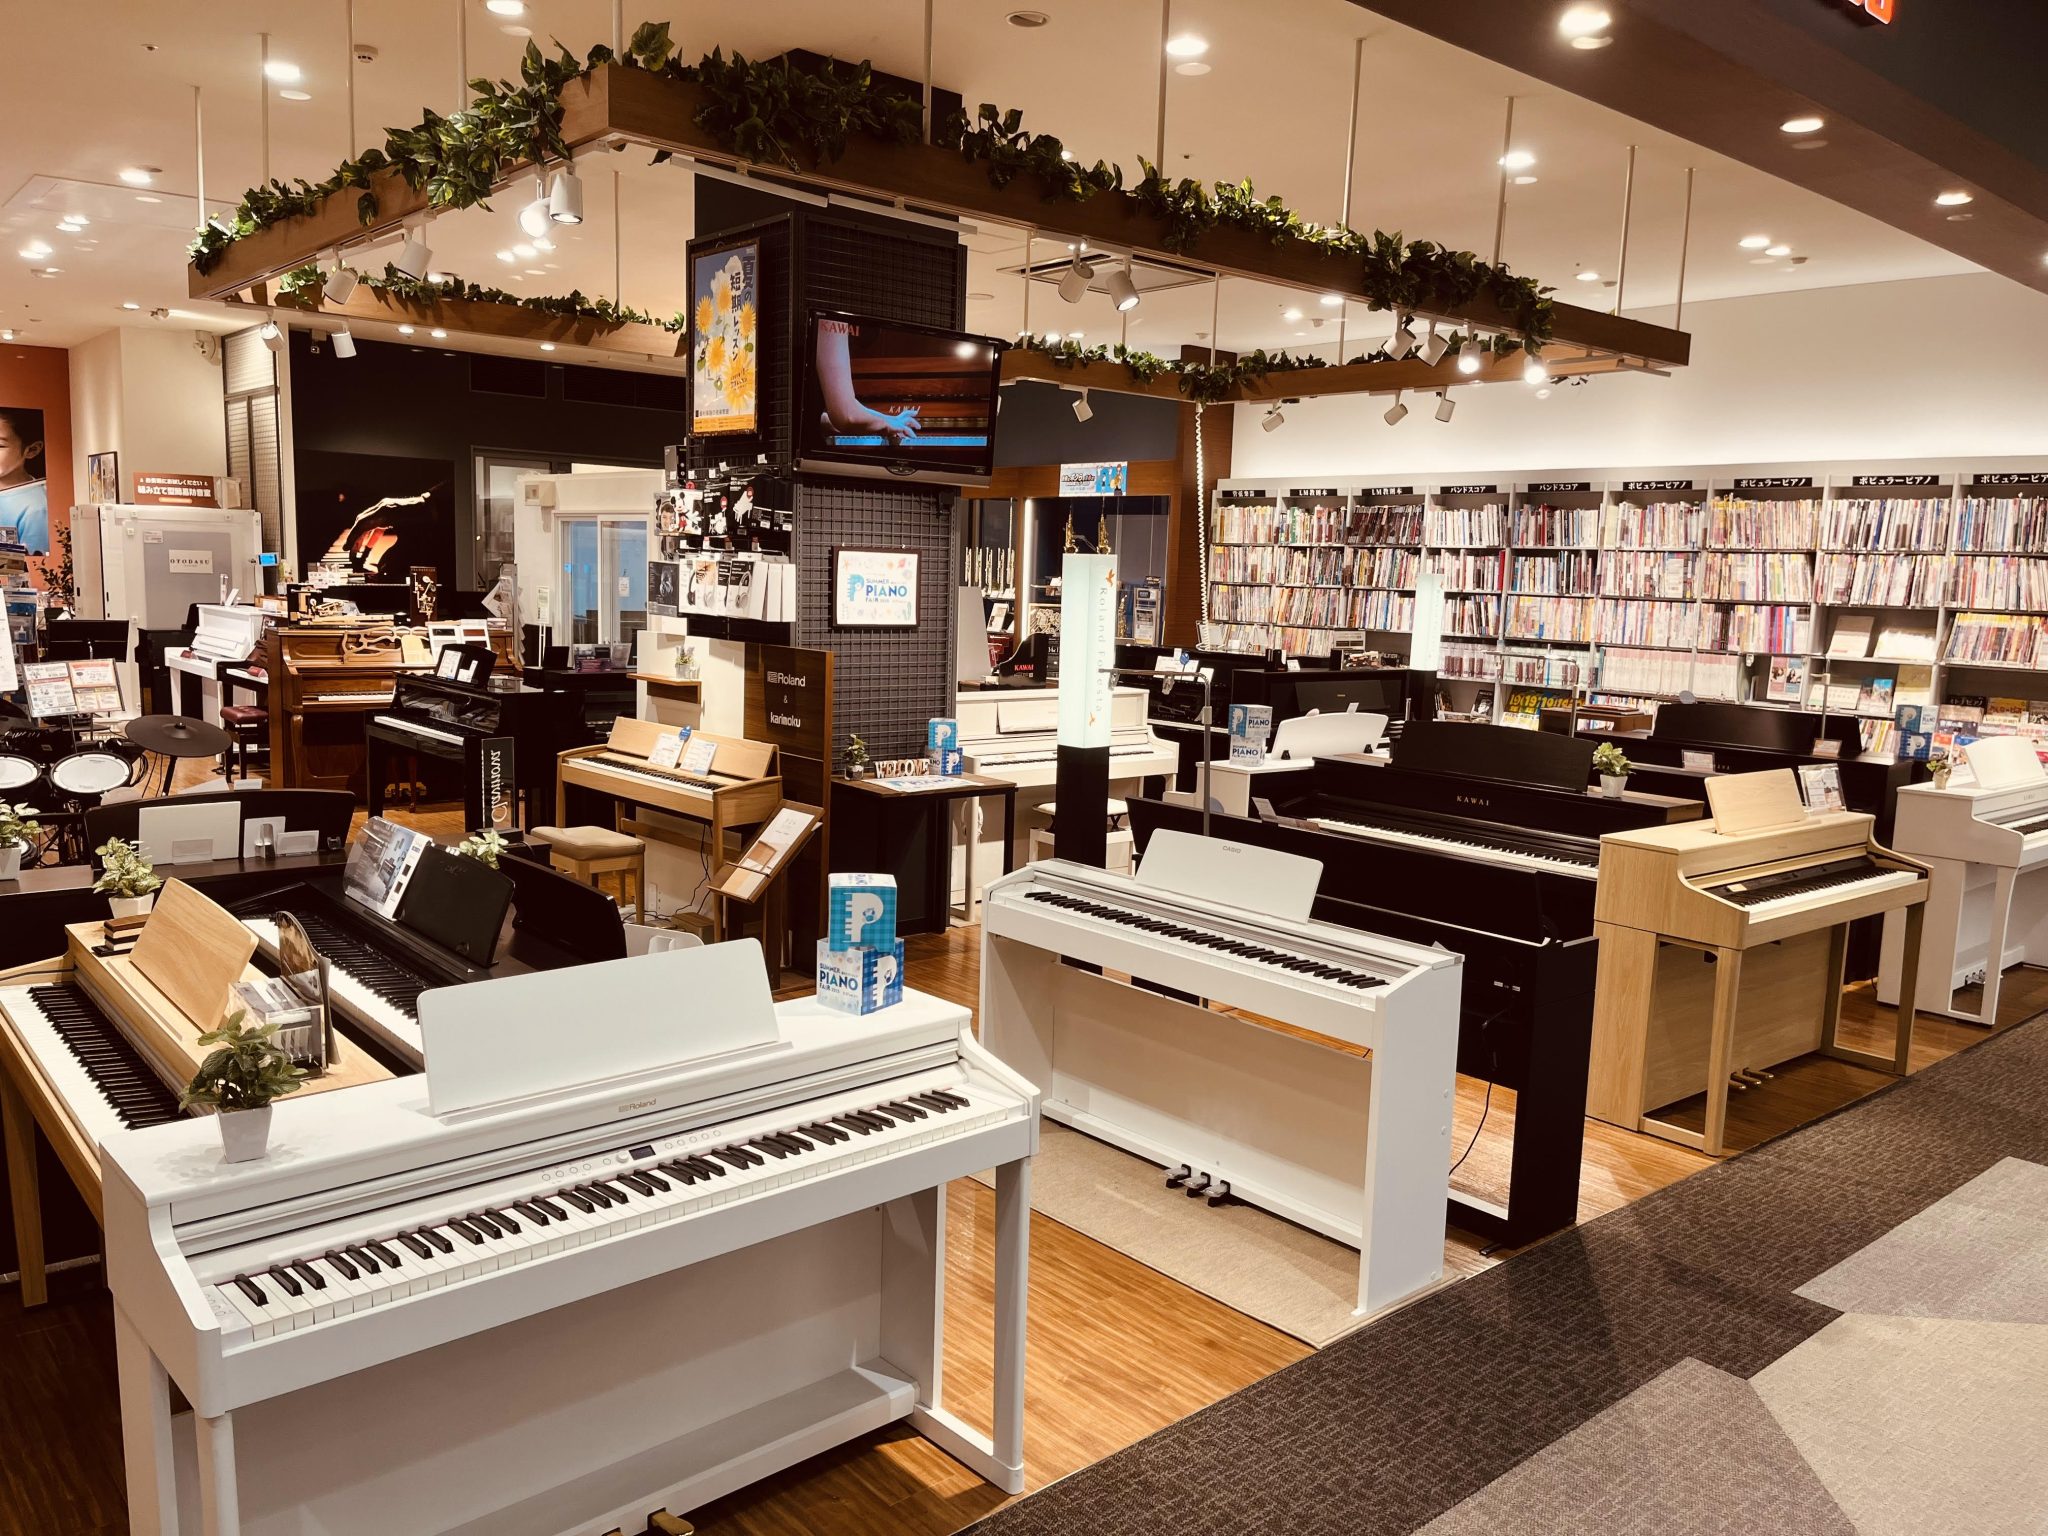 島村楽器イオンモール広島府中店は、中国地方でも唯一のピアノの専門店「島村楽器ピアノショールーム広島」として、グランドピアノ・アップライトピアノ・ハイブリッドピアノ・電子ピアノを圧倒的な品揃えでご用意しております。また、当店はピアノ選びの専門スタッフ「ピアノアドバイザー」が4名在籍しておりますので、安 […]